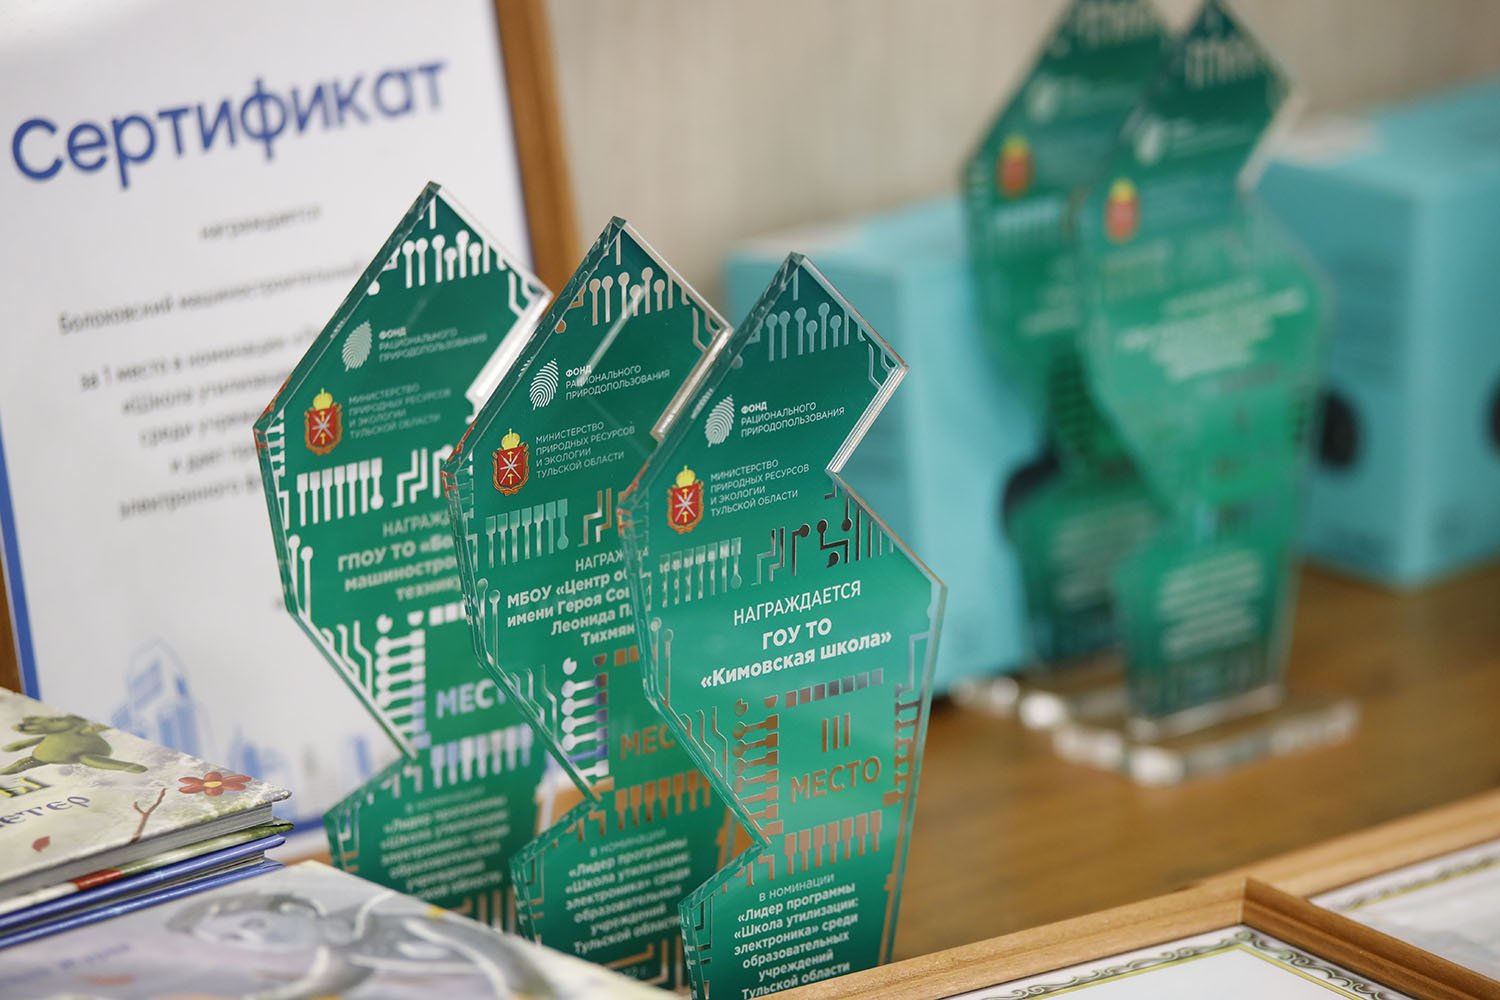 В Туле наградили активных участников экопрограммы "Школа утилизации: электроника"